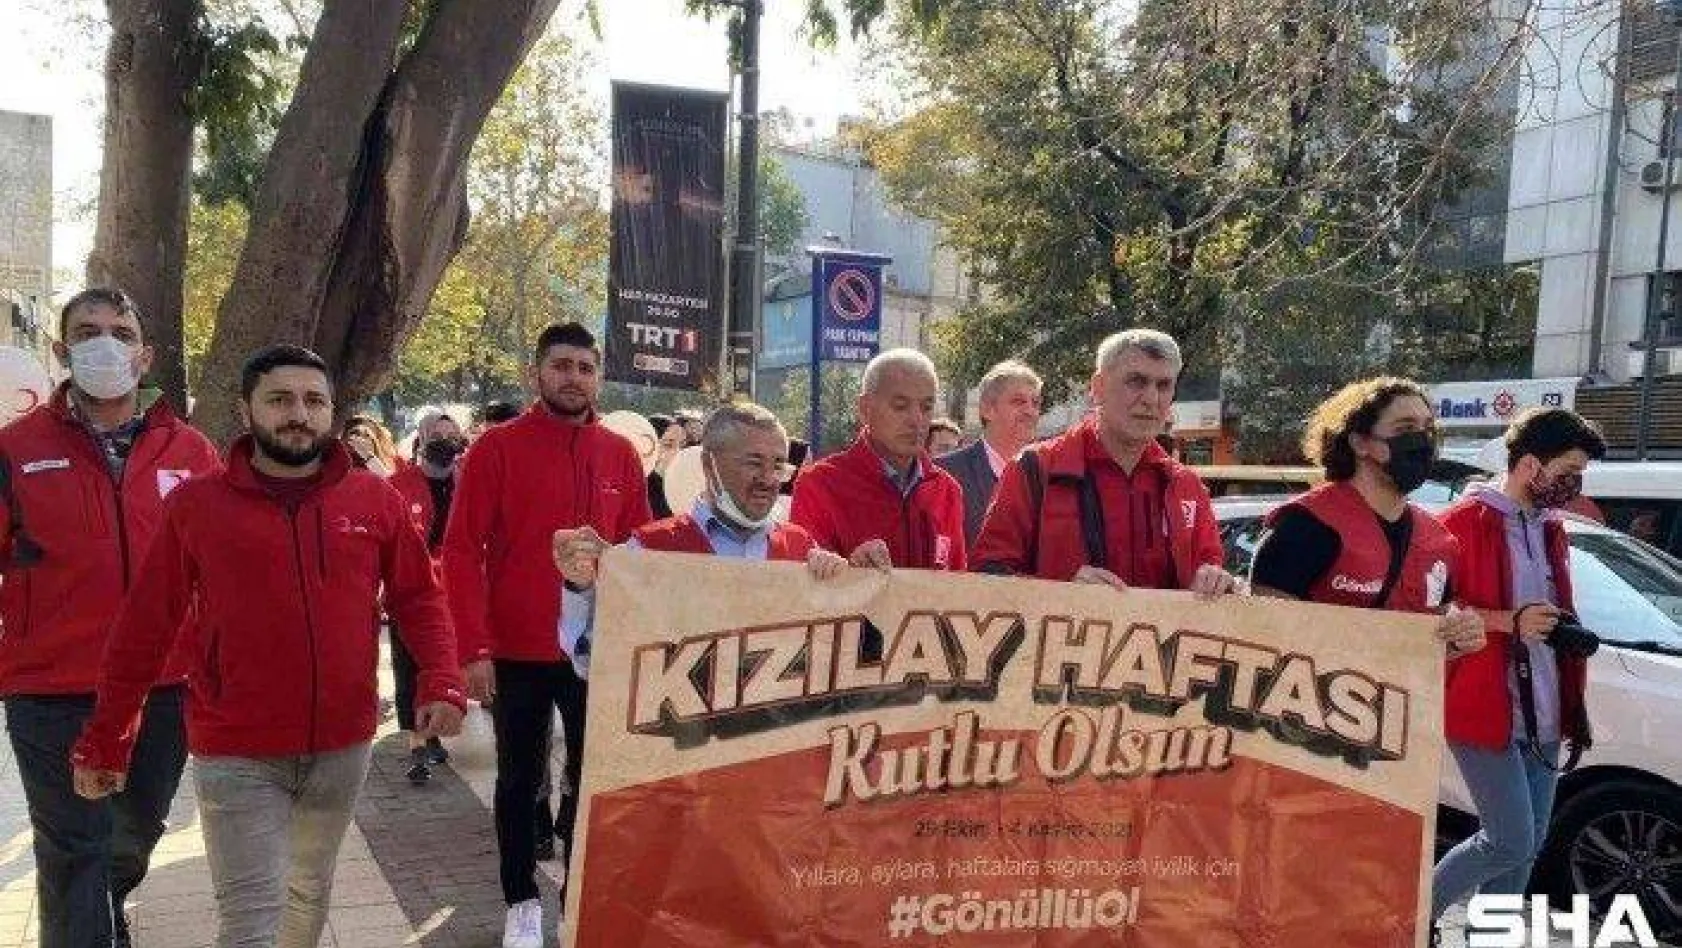 Kızılay Haftası Üsküdar'da yürüyüş ile kutlandı